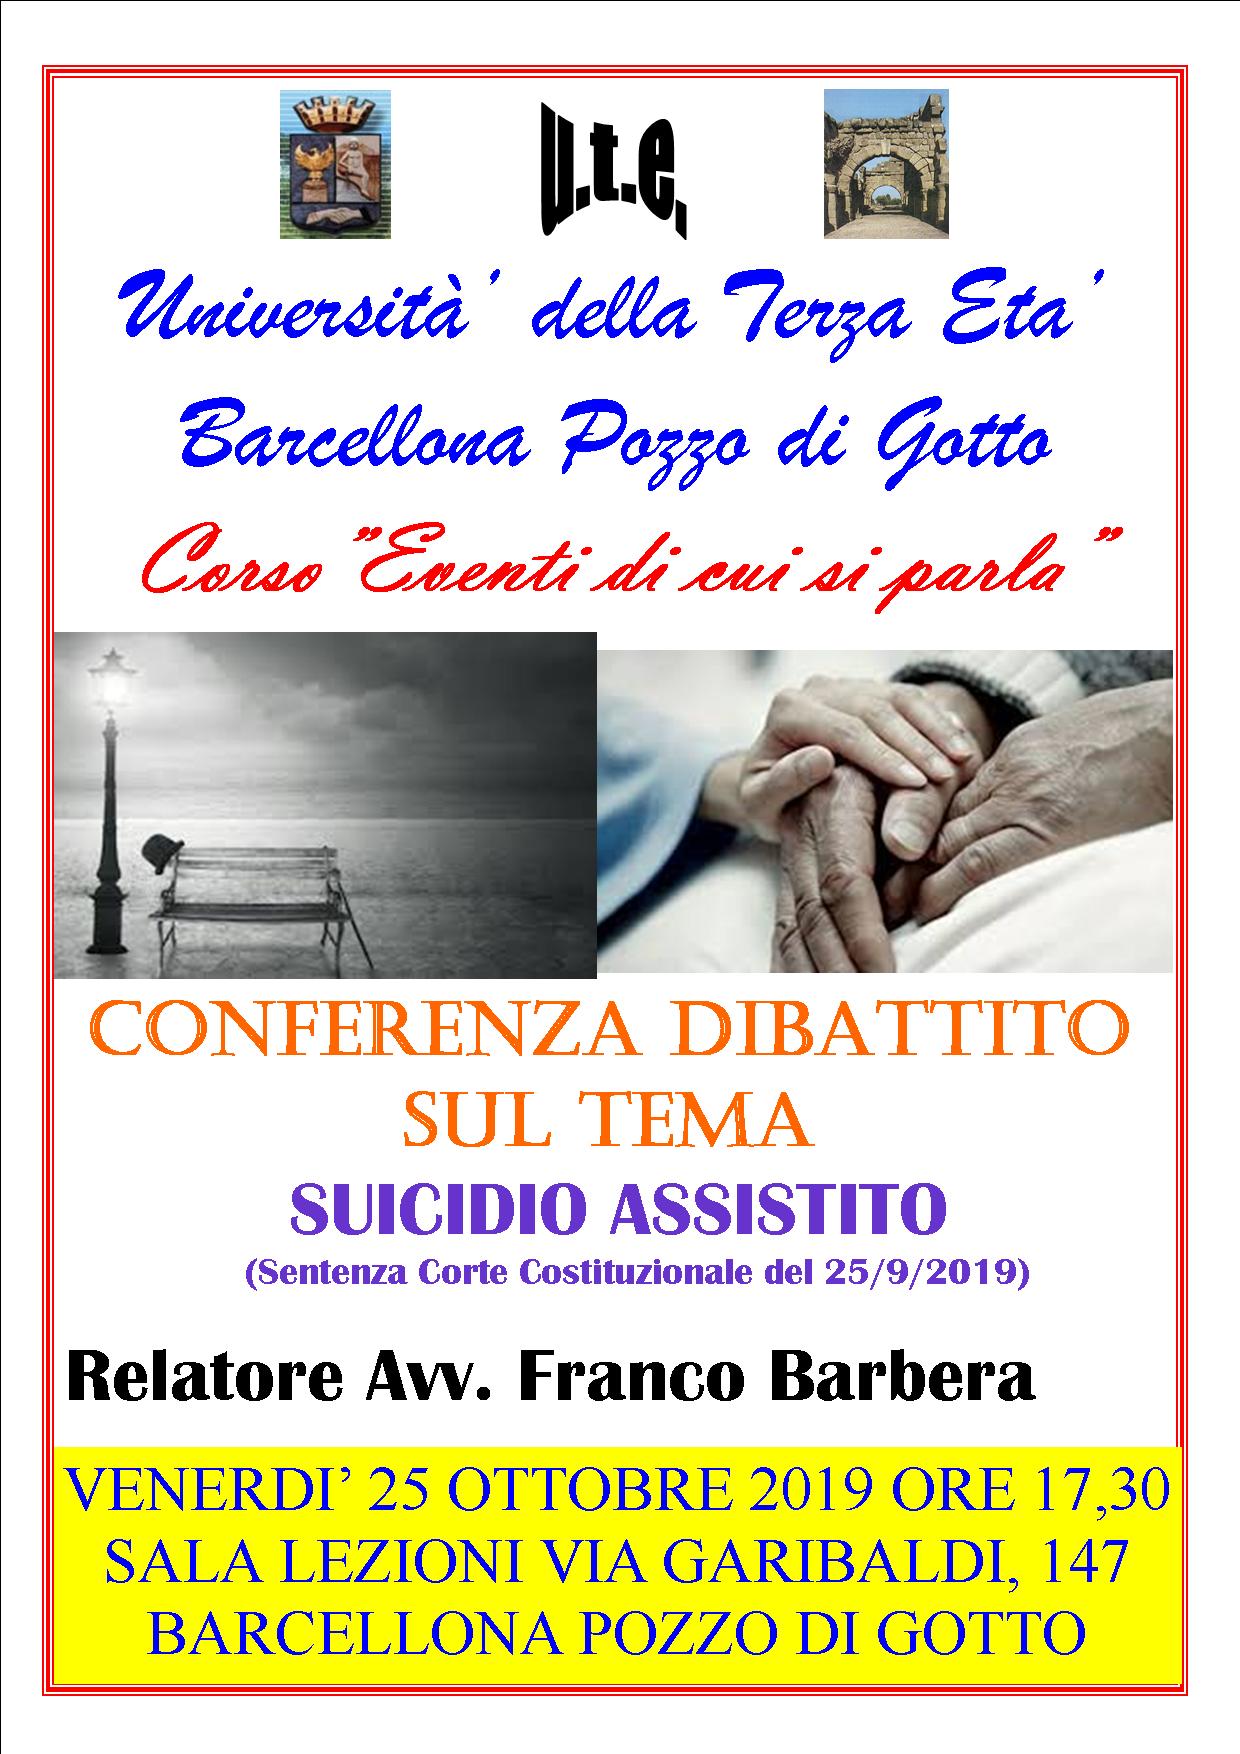 Barcellona PG. All’Ute Conferenza sul “Suicidio Assistito” con l’Avv. Franco Barbera